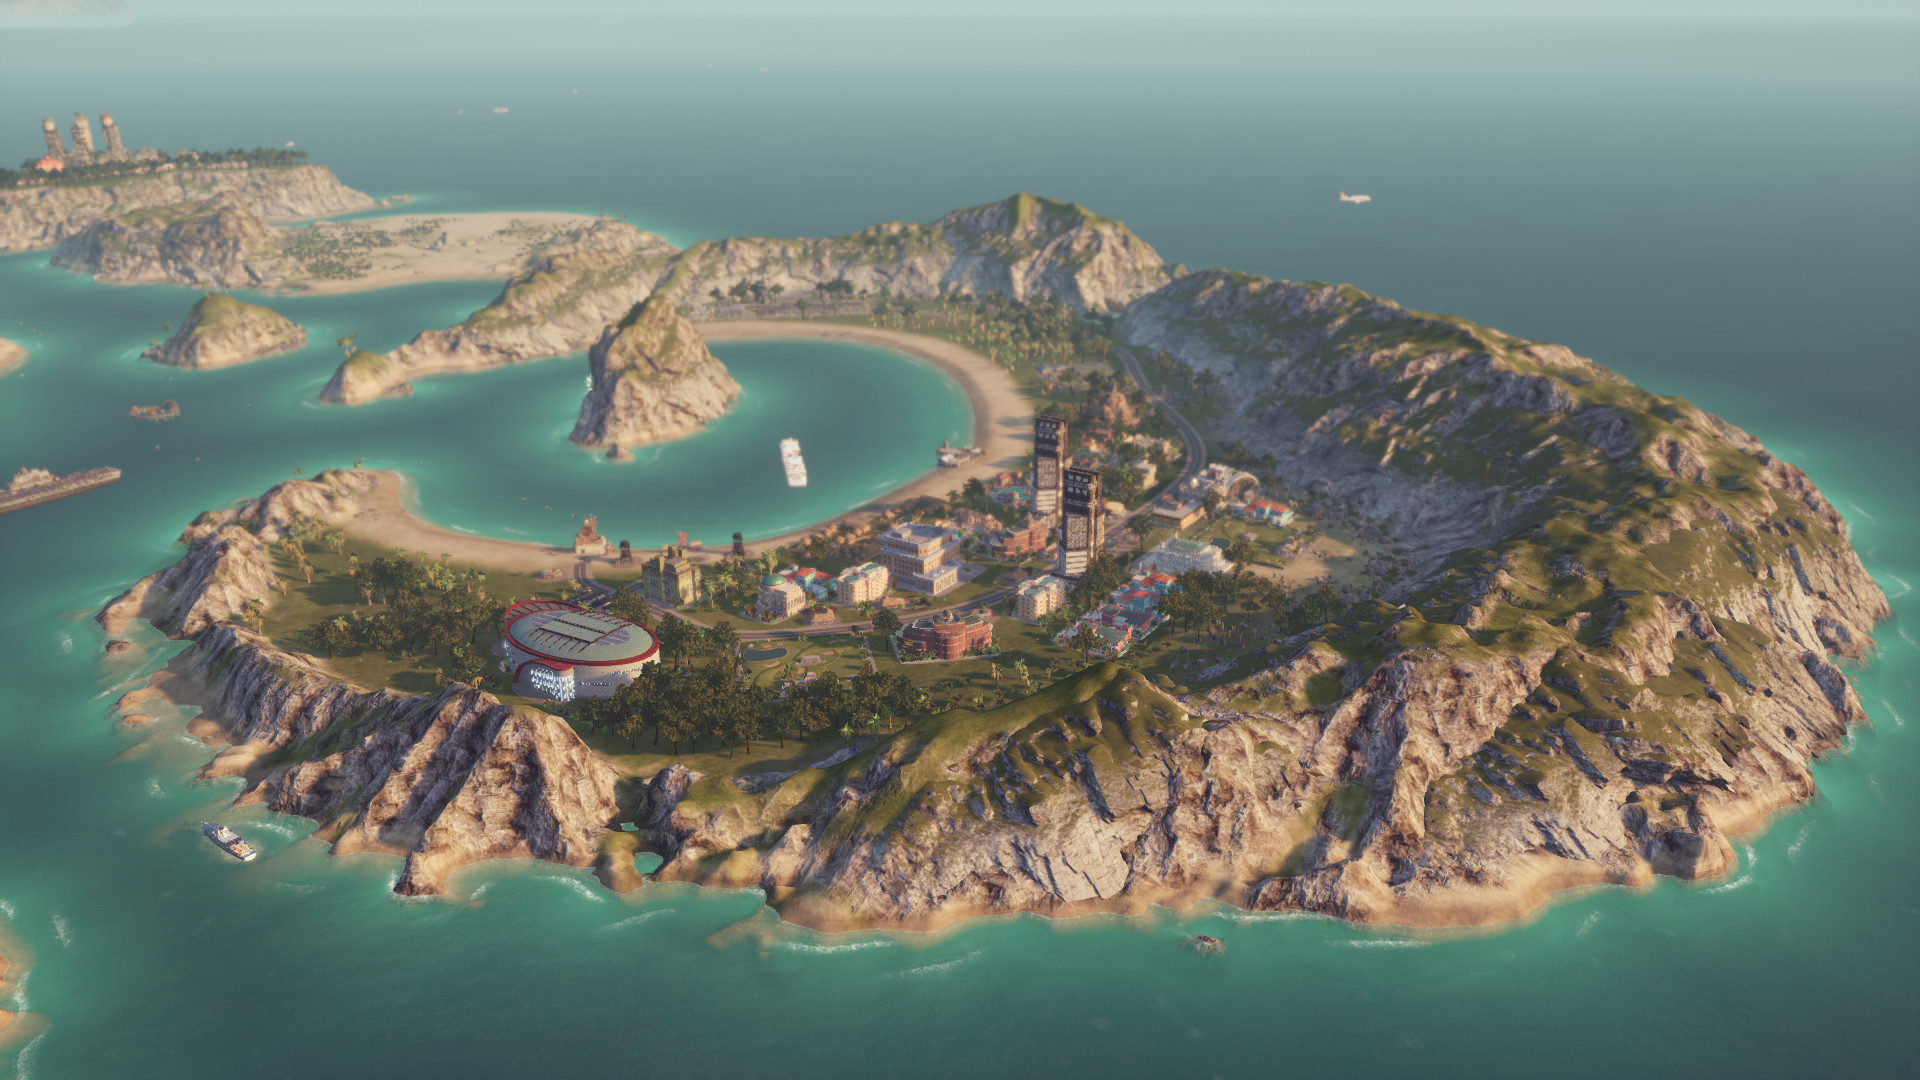 تحميل لعبة بناء المدن Tropico 6: El Prez Edition - 2019 نسخة ريباك بمساحة  4.8 GB Ss_8e0acd0a5574a9296883bcd91463d714047fde32.1920x1080